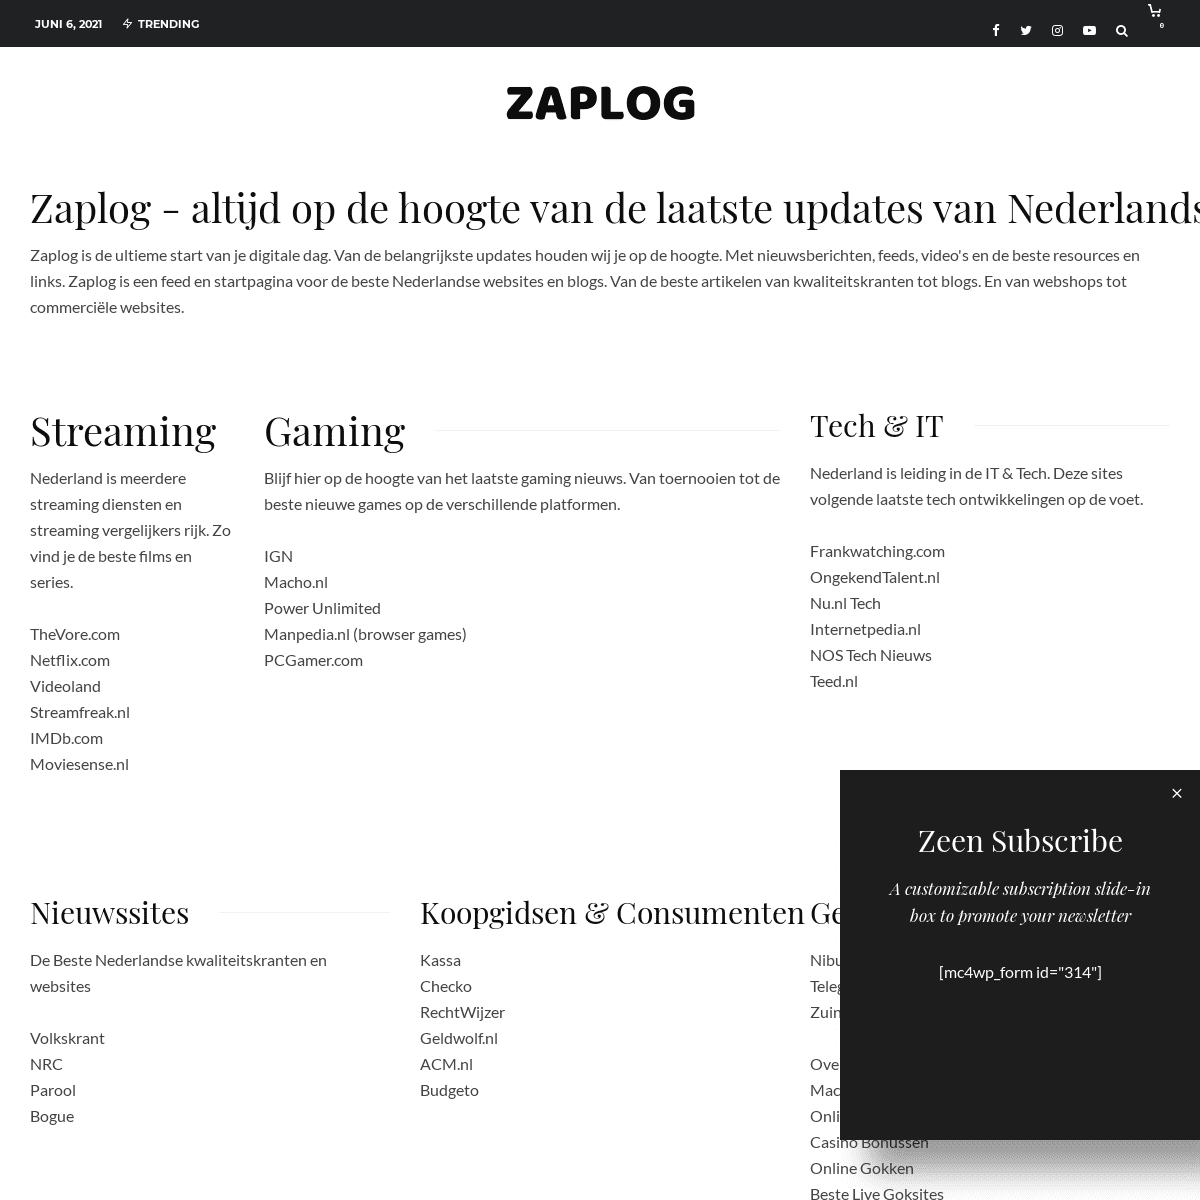 A complete backup of https://zaplog.nl